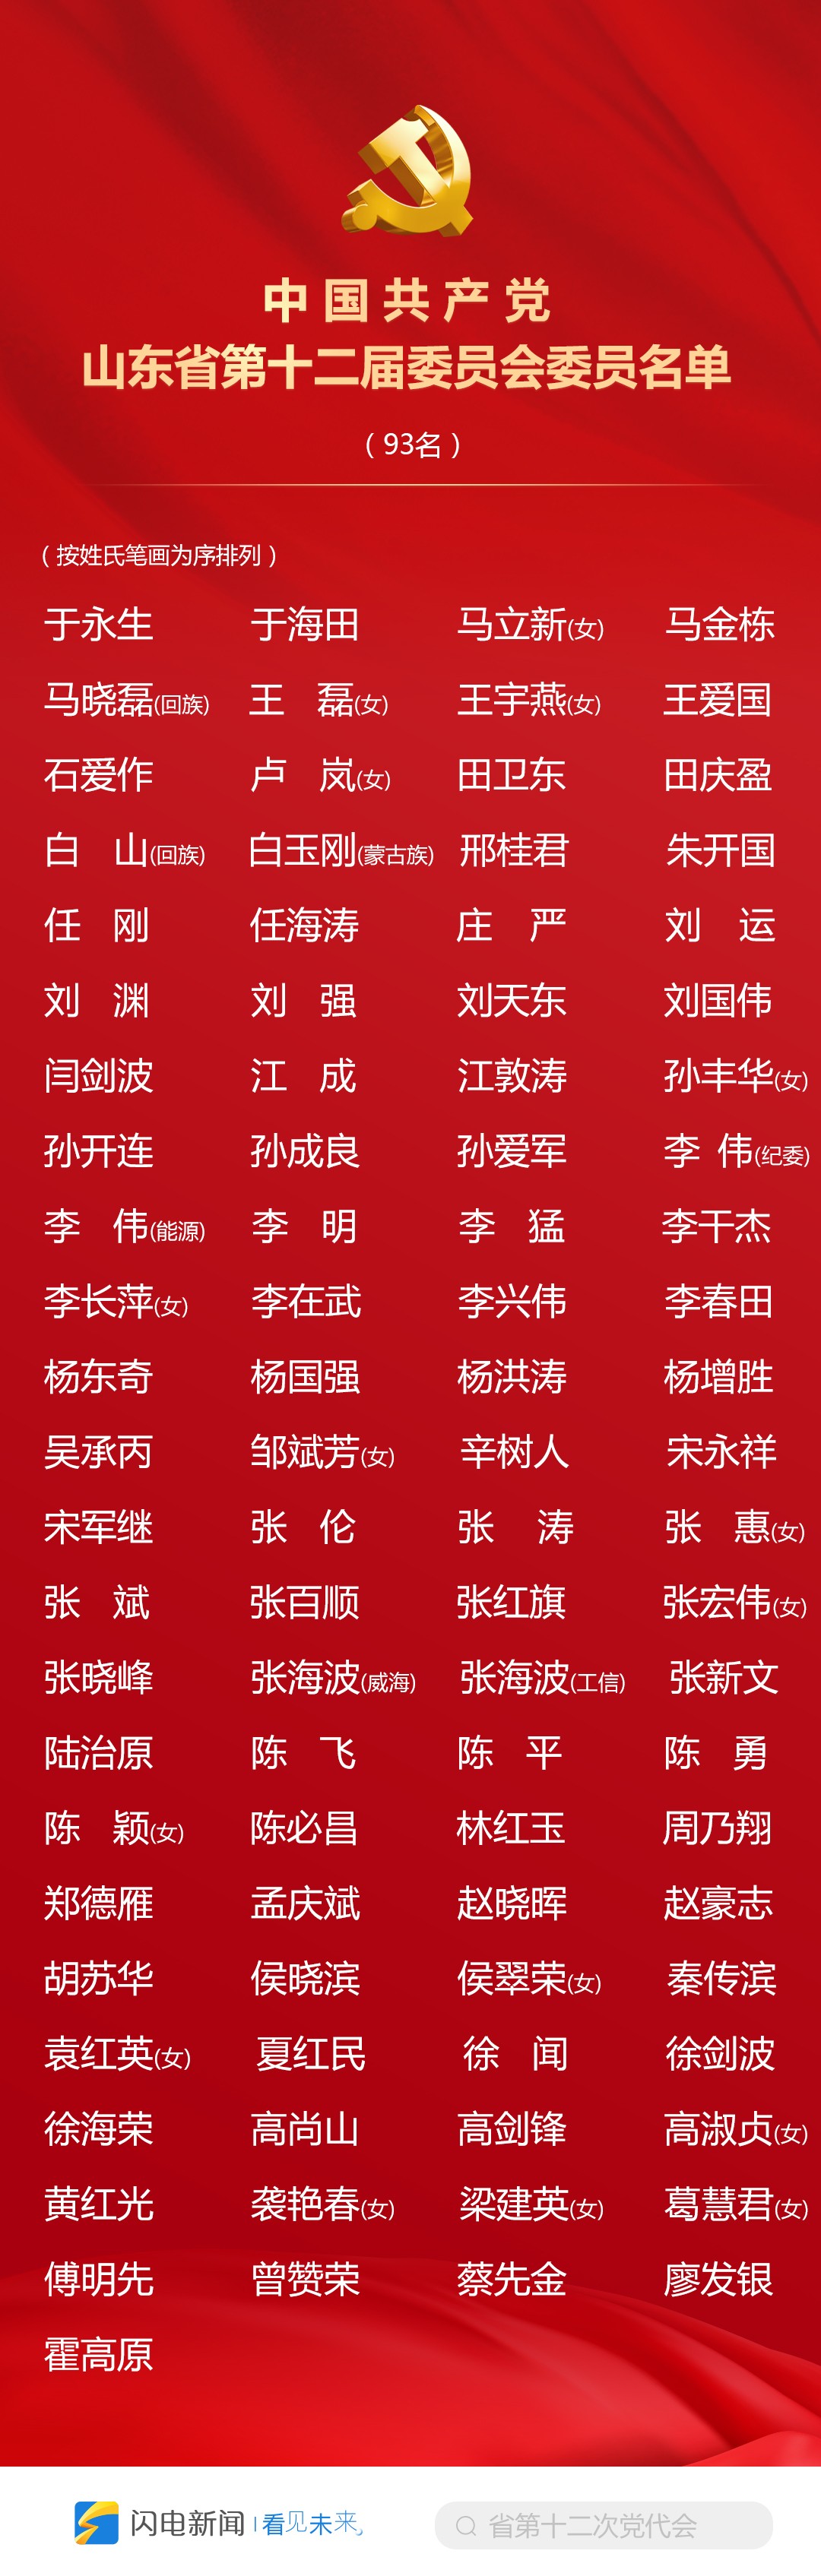 中國共產黨山東省第十二屆委員會委員名單